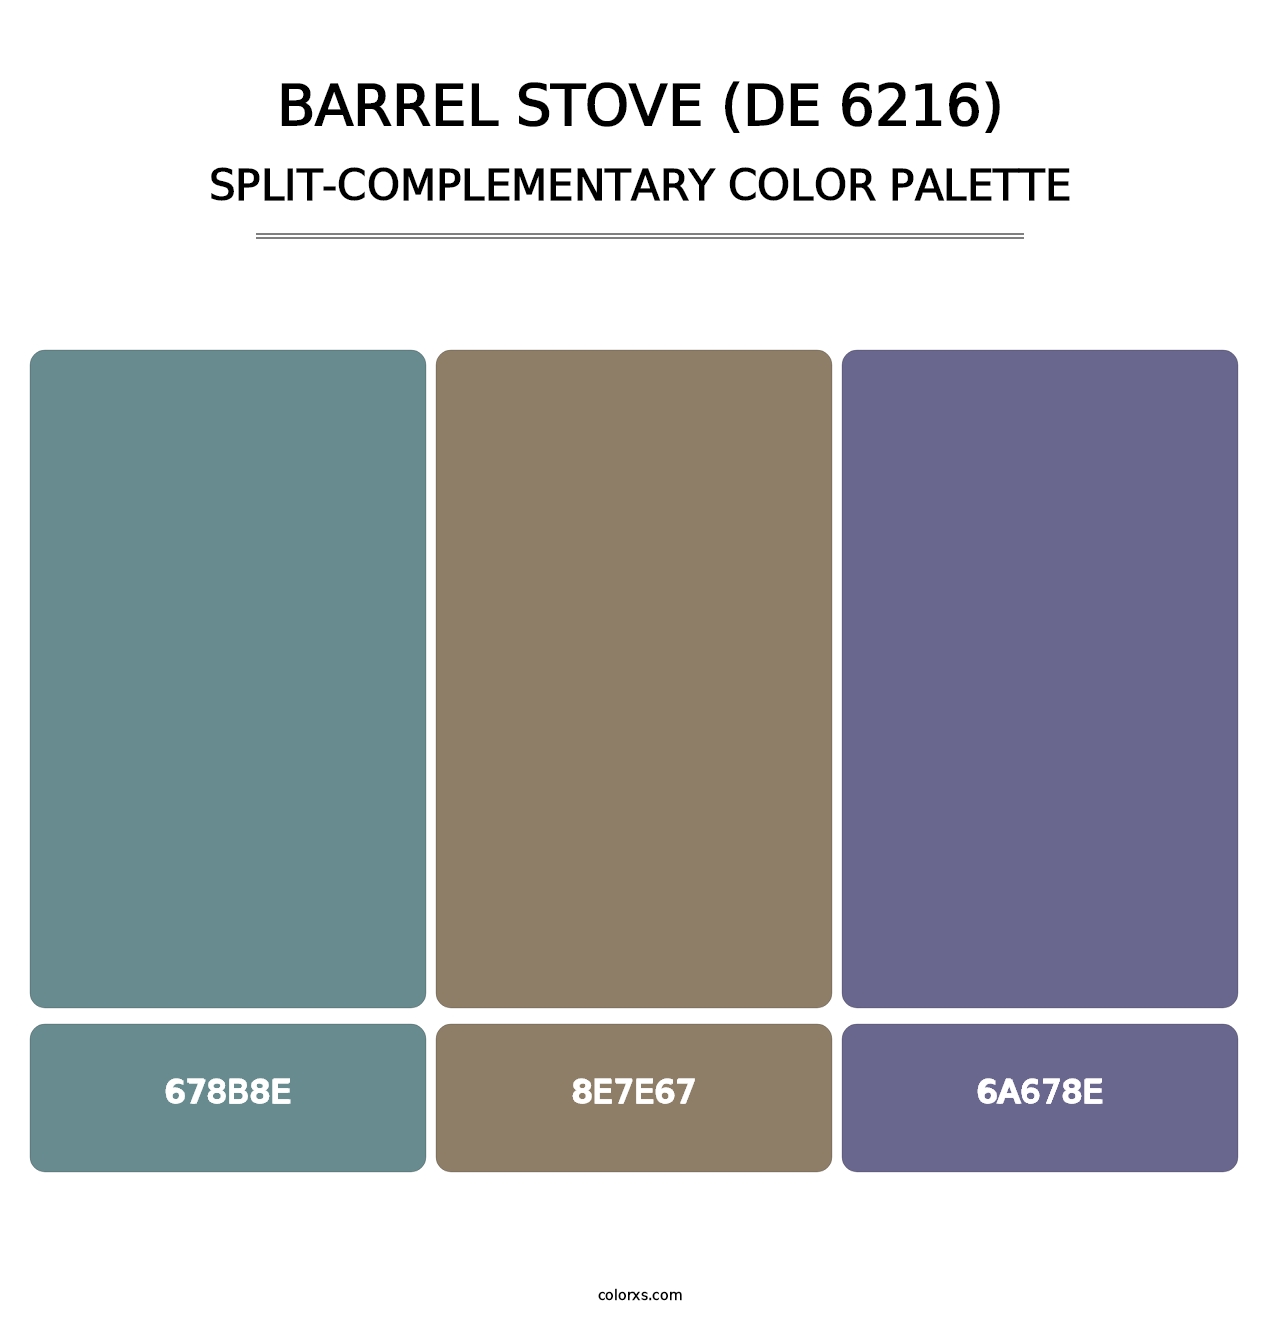 Barrel Stove (DE 6216) - Split-Complementary Color Palette